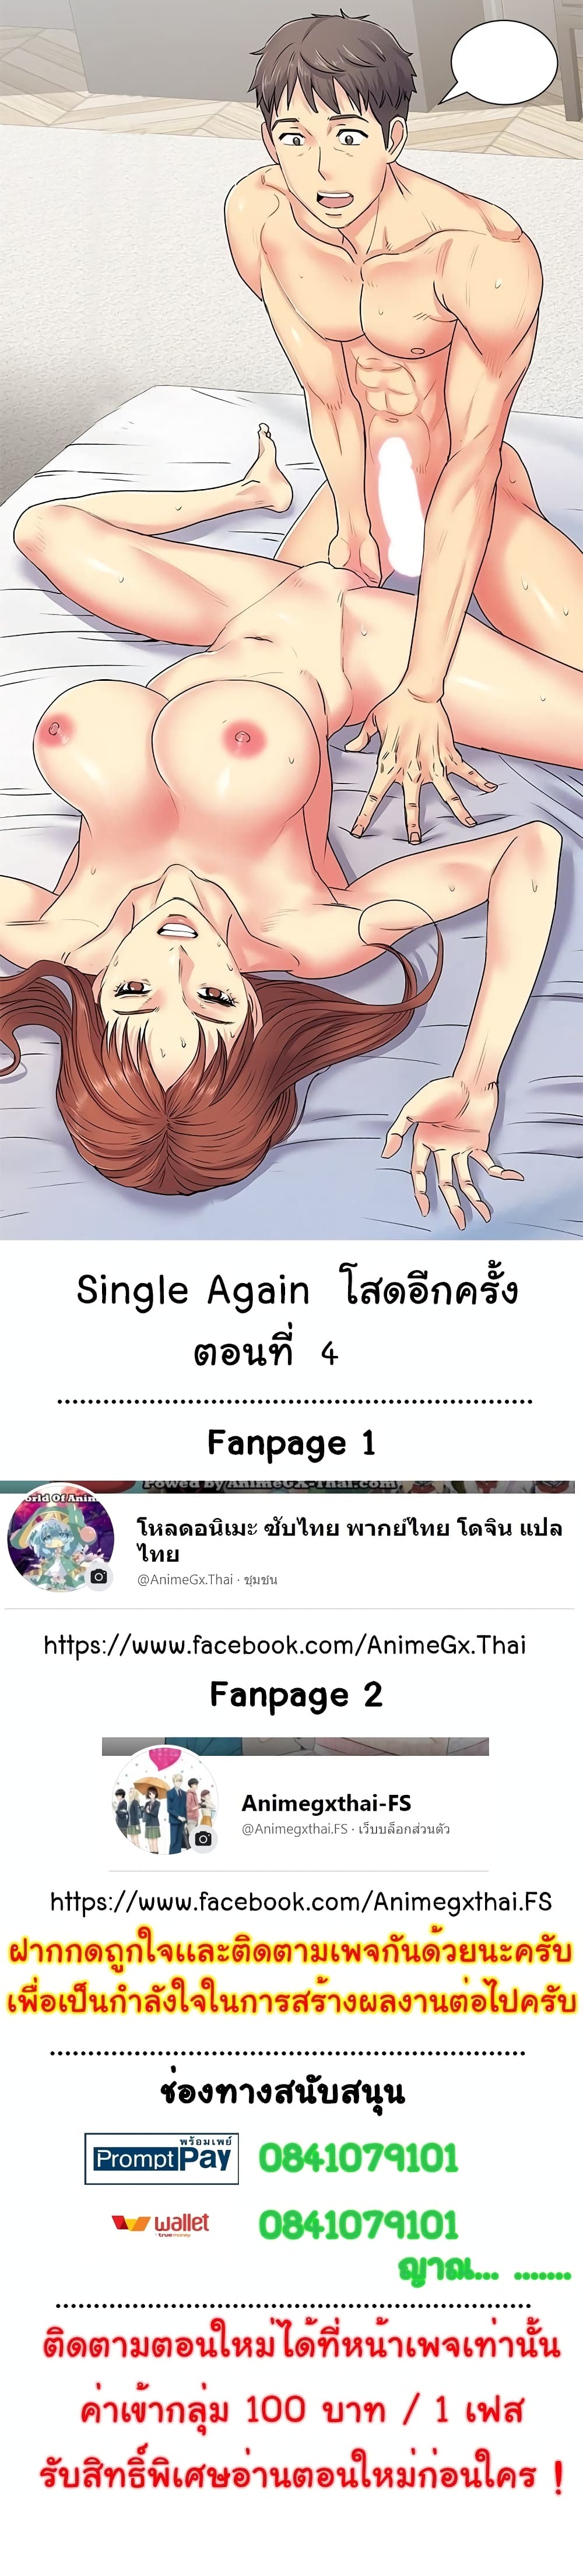 Single Again 4-4